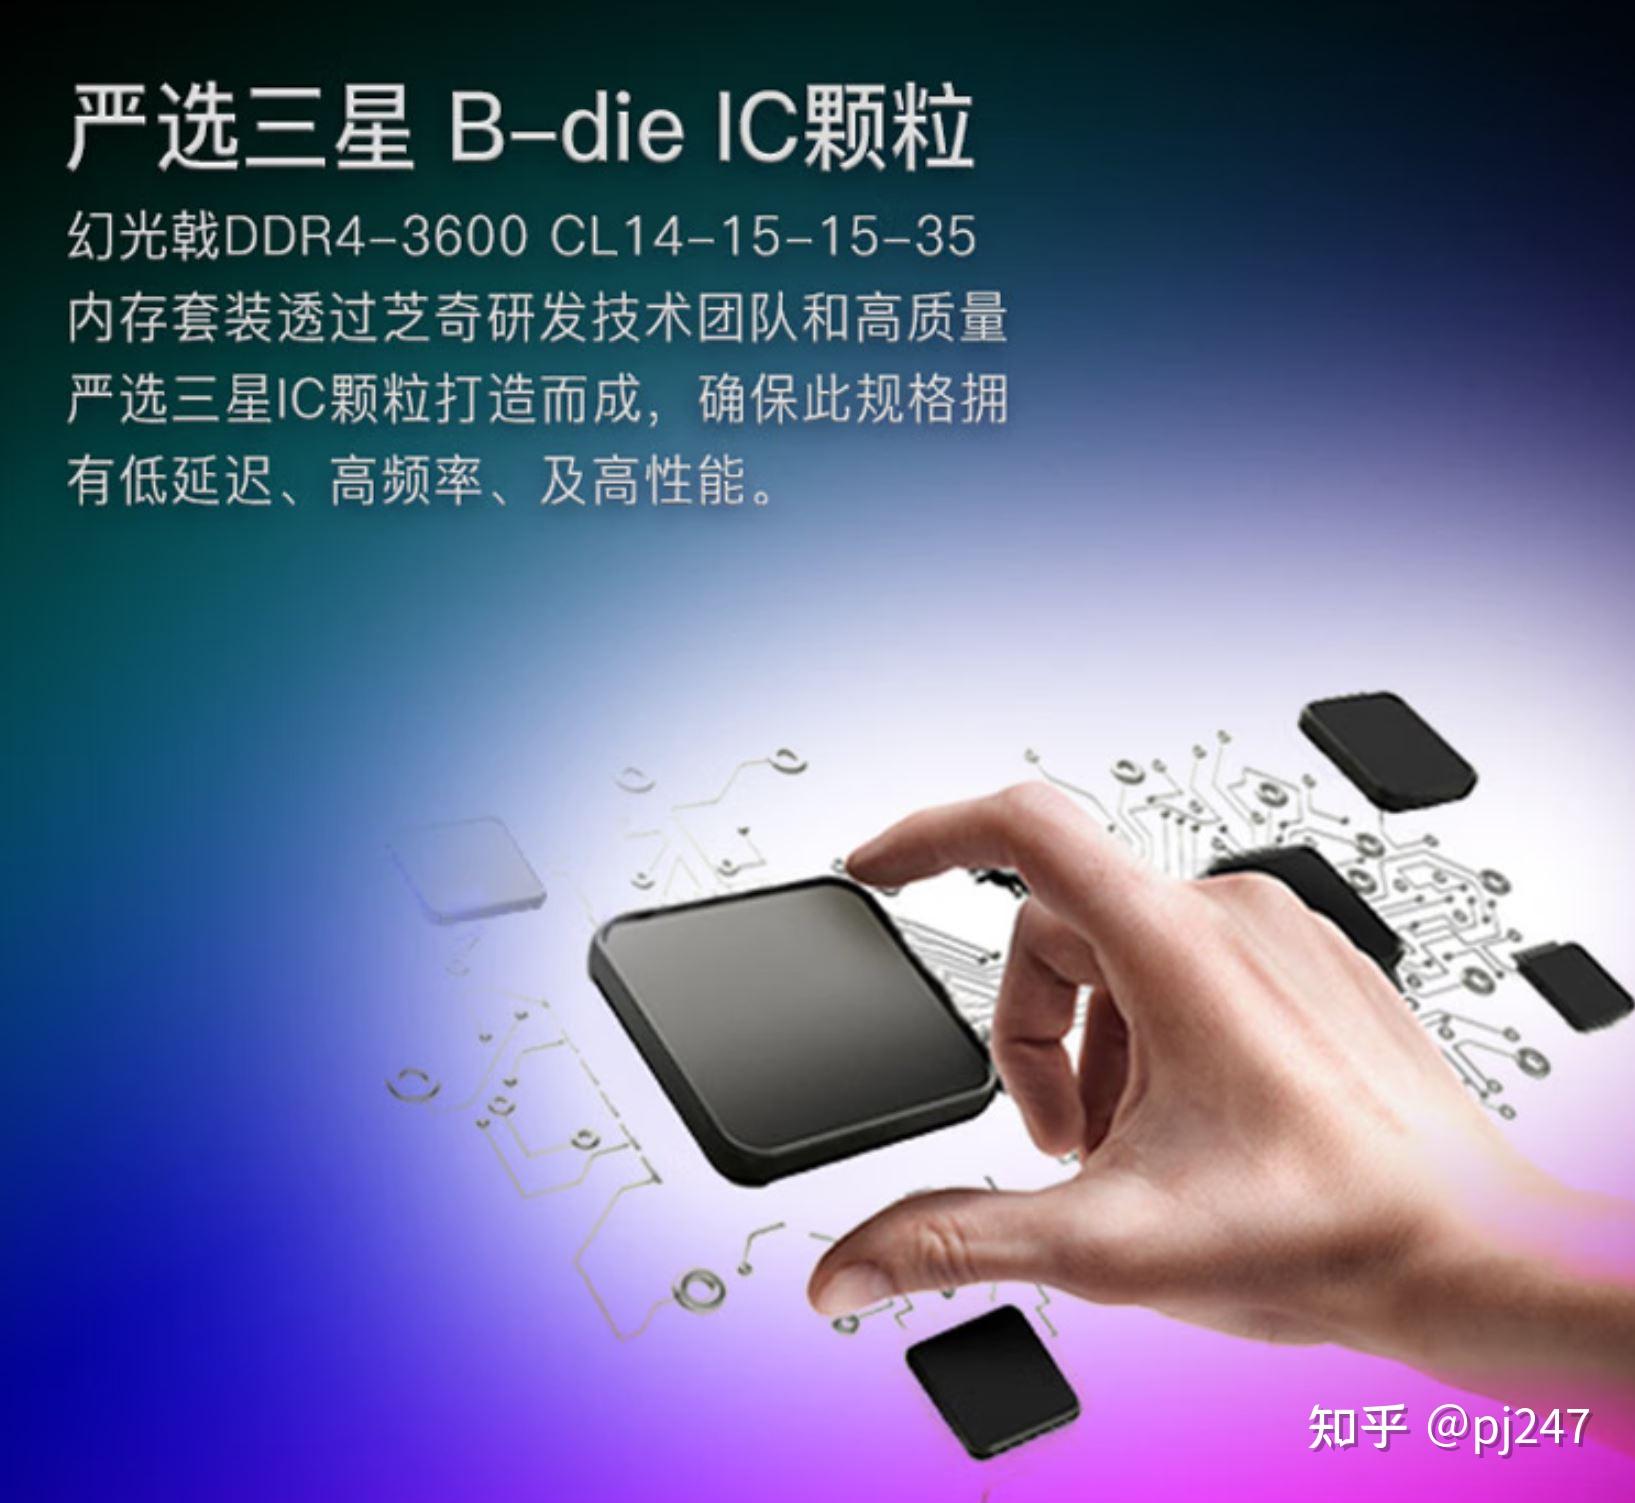 DDR4 移动内存能否在小巧手机中应用？引发热议  第3张